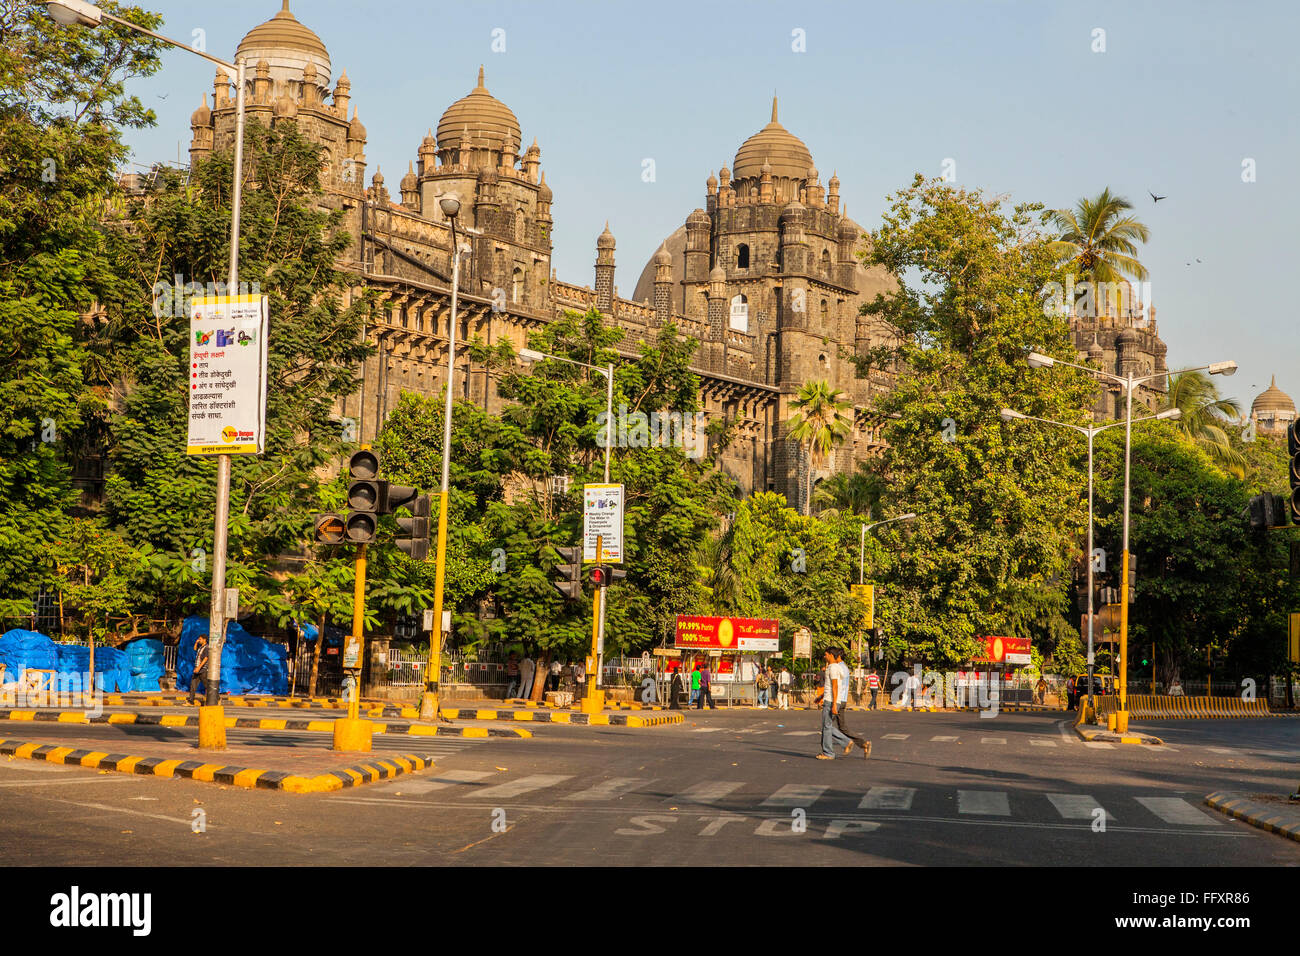 Verrouiller la route vide ; Bureau de poste général ; mumbai ; maharashtra ; Inde ; asie Banque D'Images